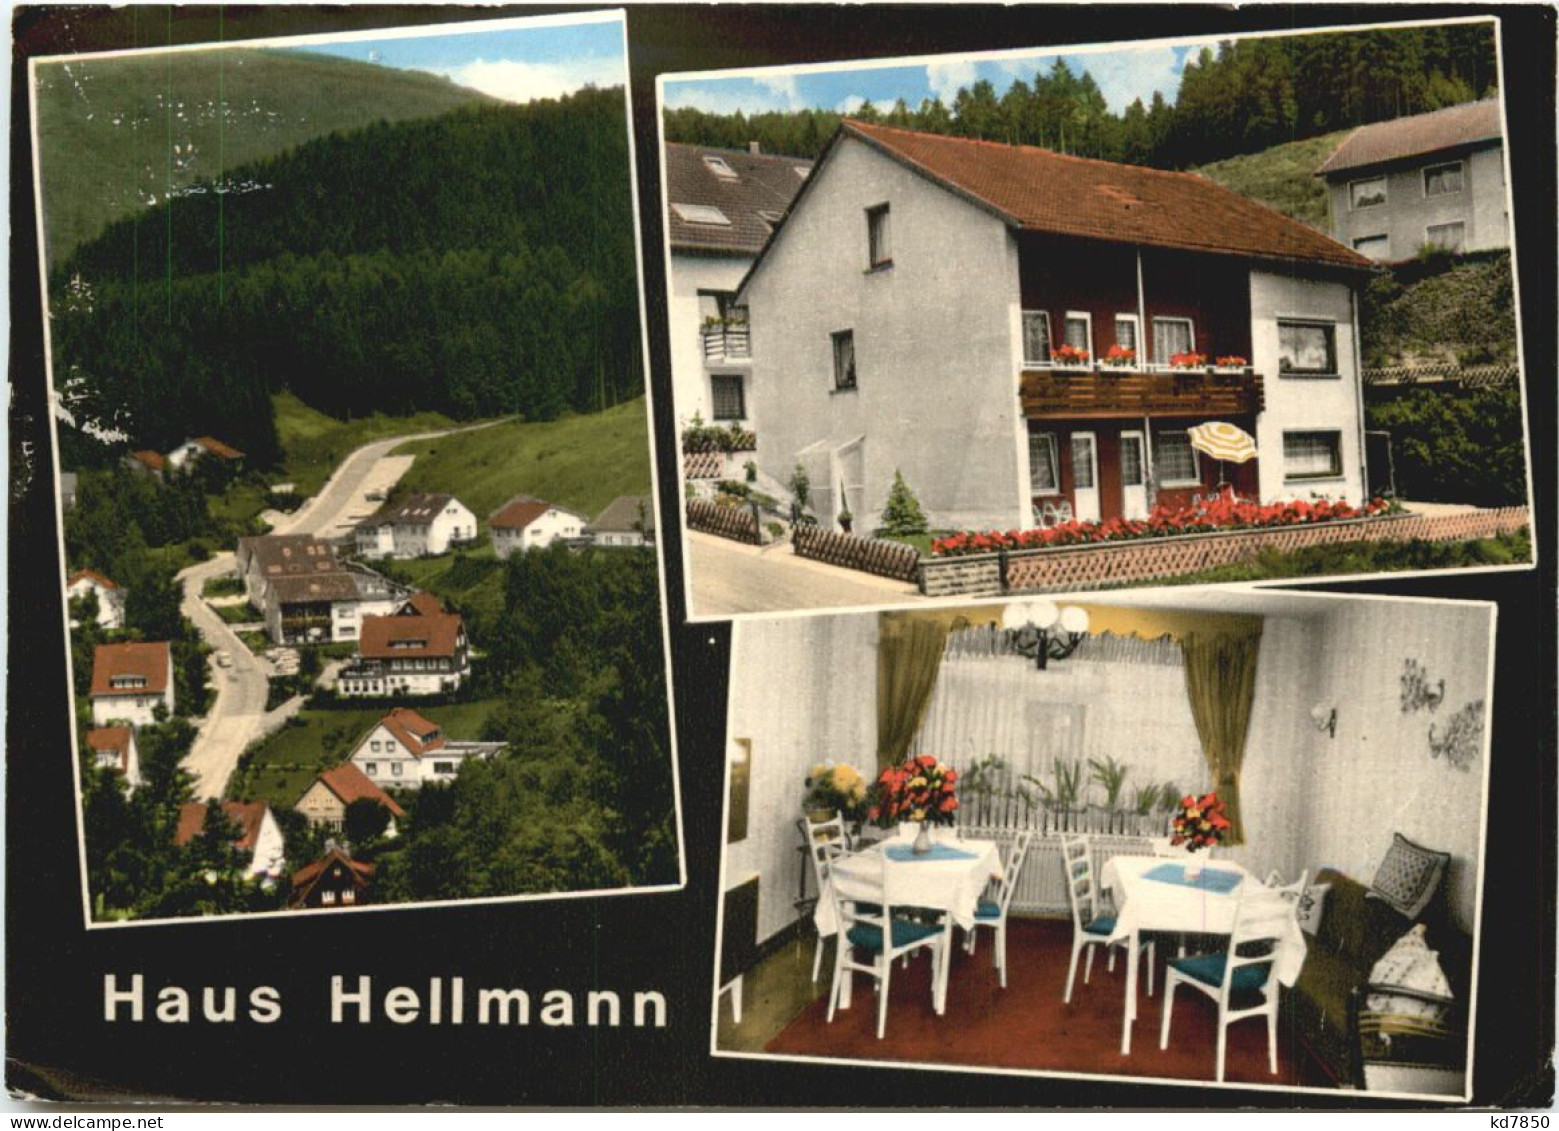 Bad Grund - Haus Hellmann - Bad Grund